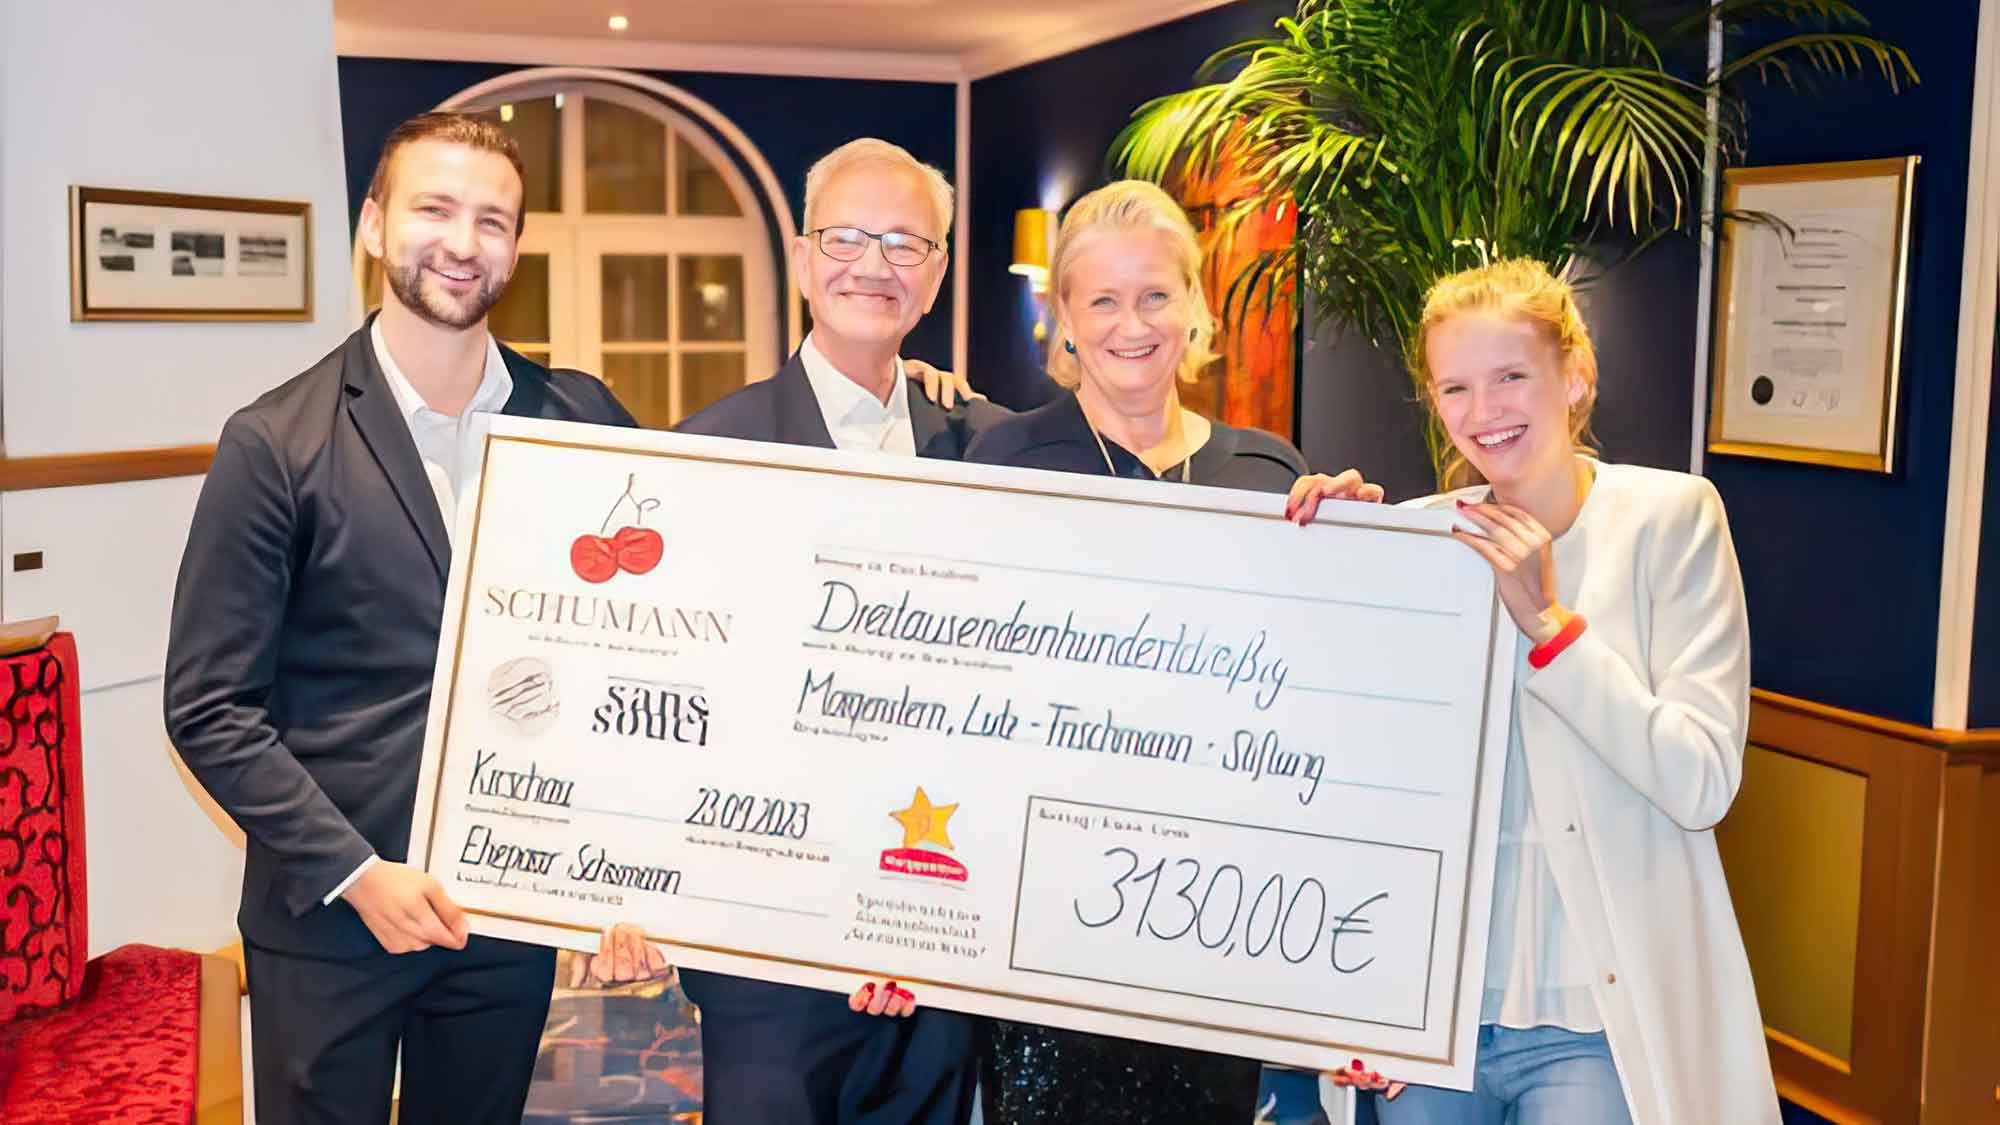 Genussfestival »Bei Schumann« übergibt 3.130 Euro Spende an Morgenstern, Lutz Frischmann Stiftung